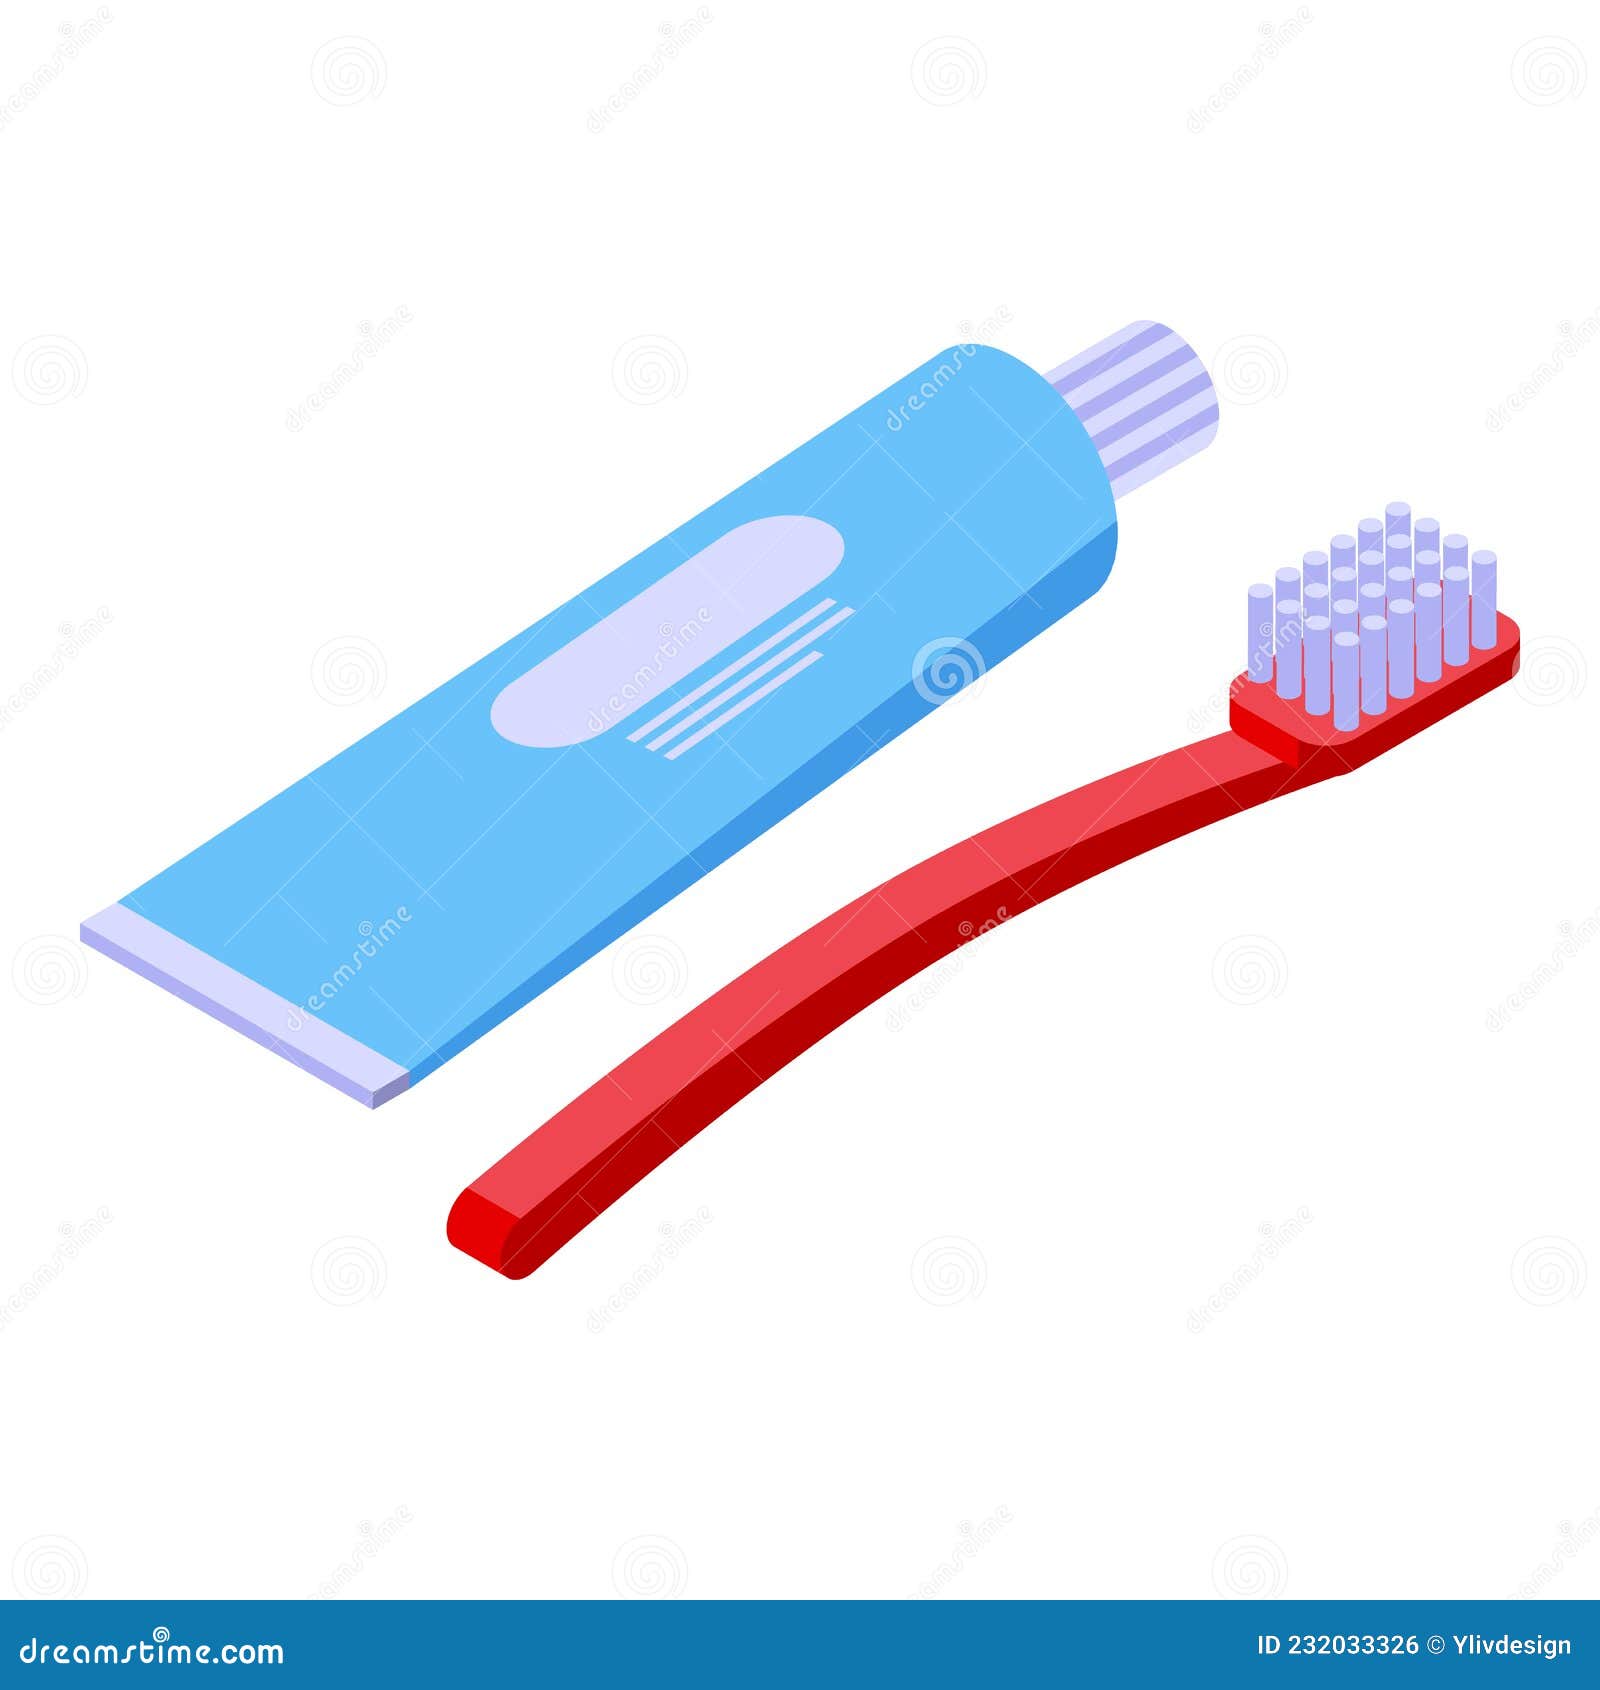 Premium Vector | Isometric toothbrush